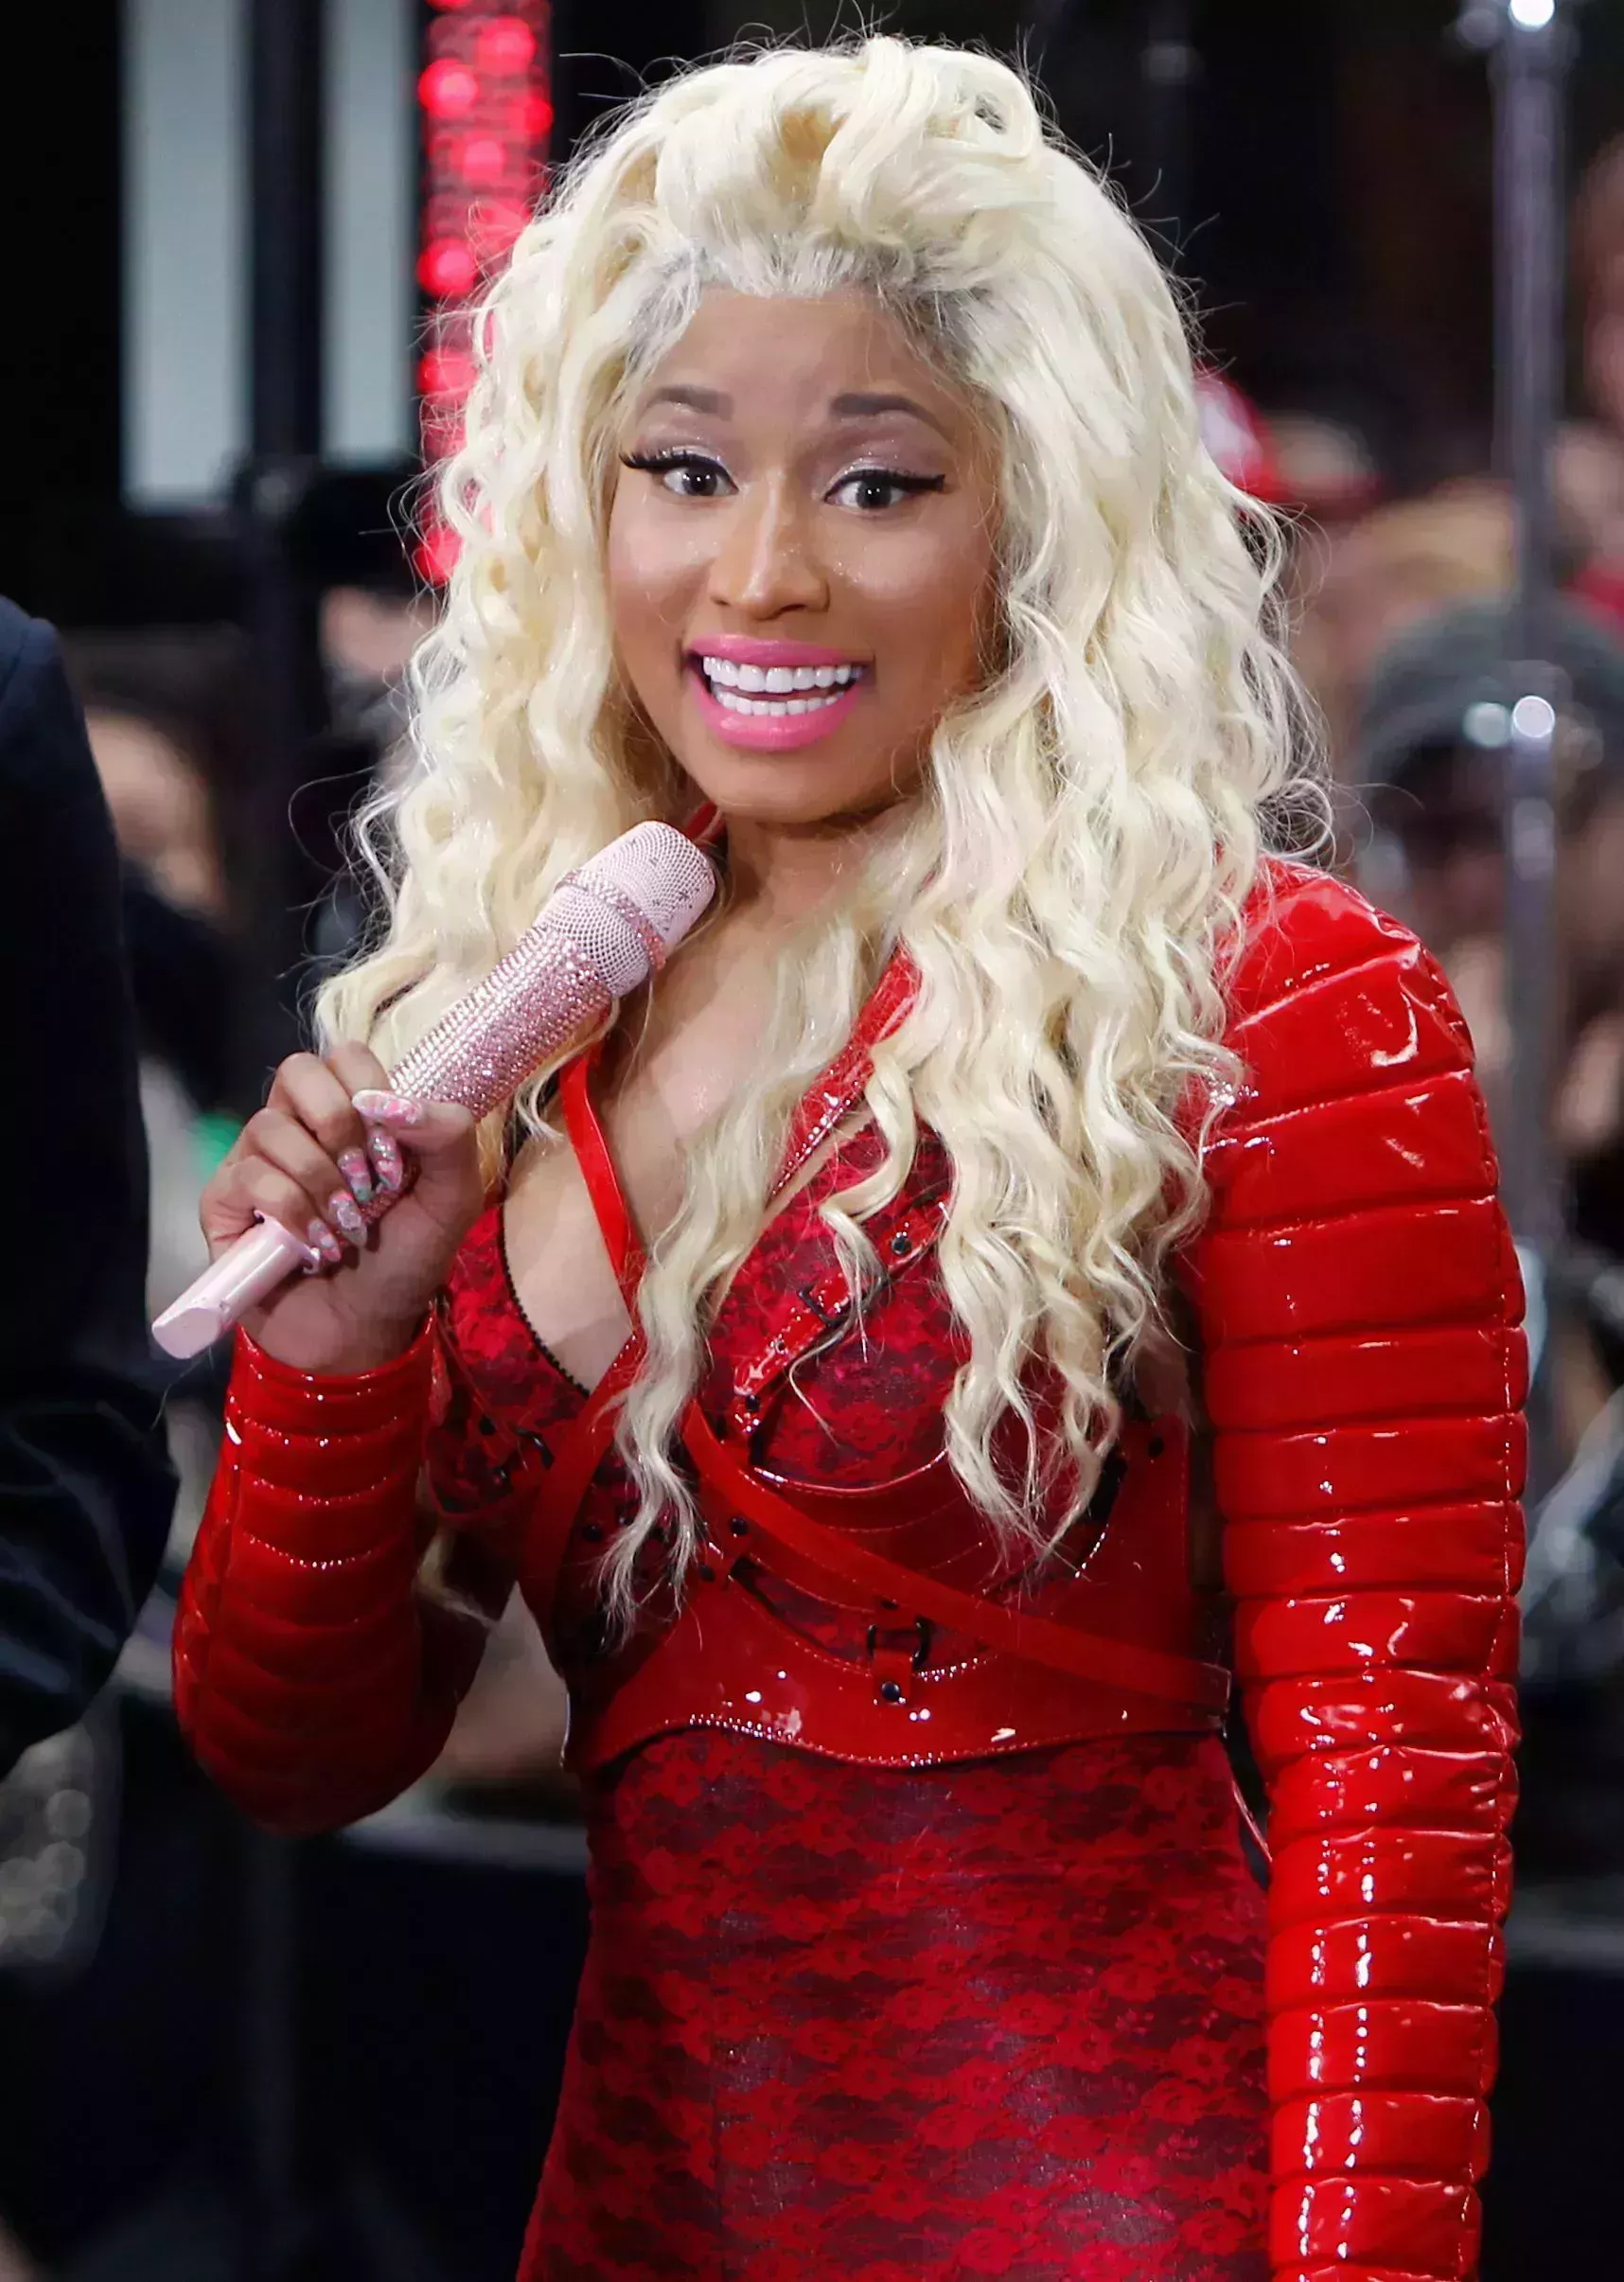 Nicki Minaj with That Frosty Long Shag